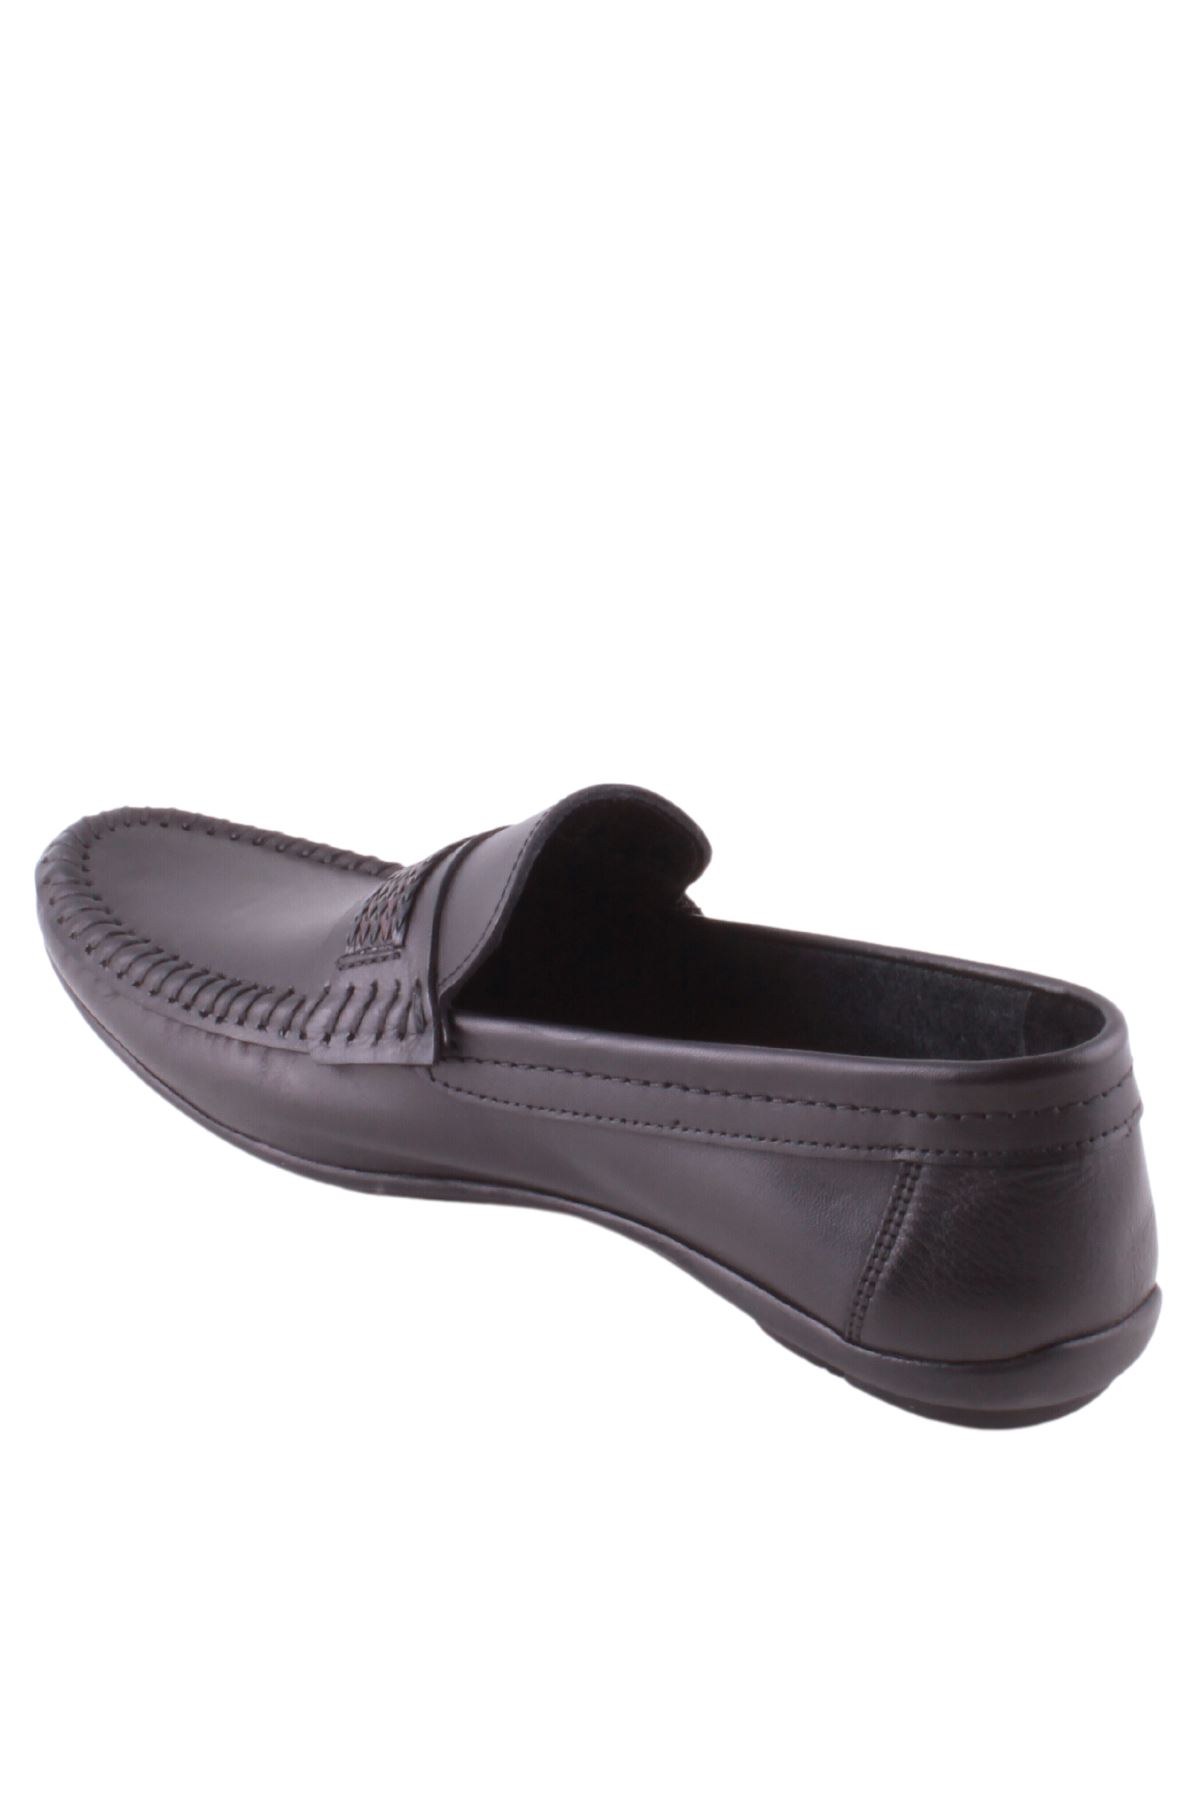 Giyinsen Erkek Siyah Günlük Ayakkabı - 24KH44000020